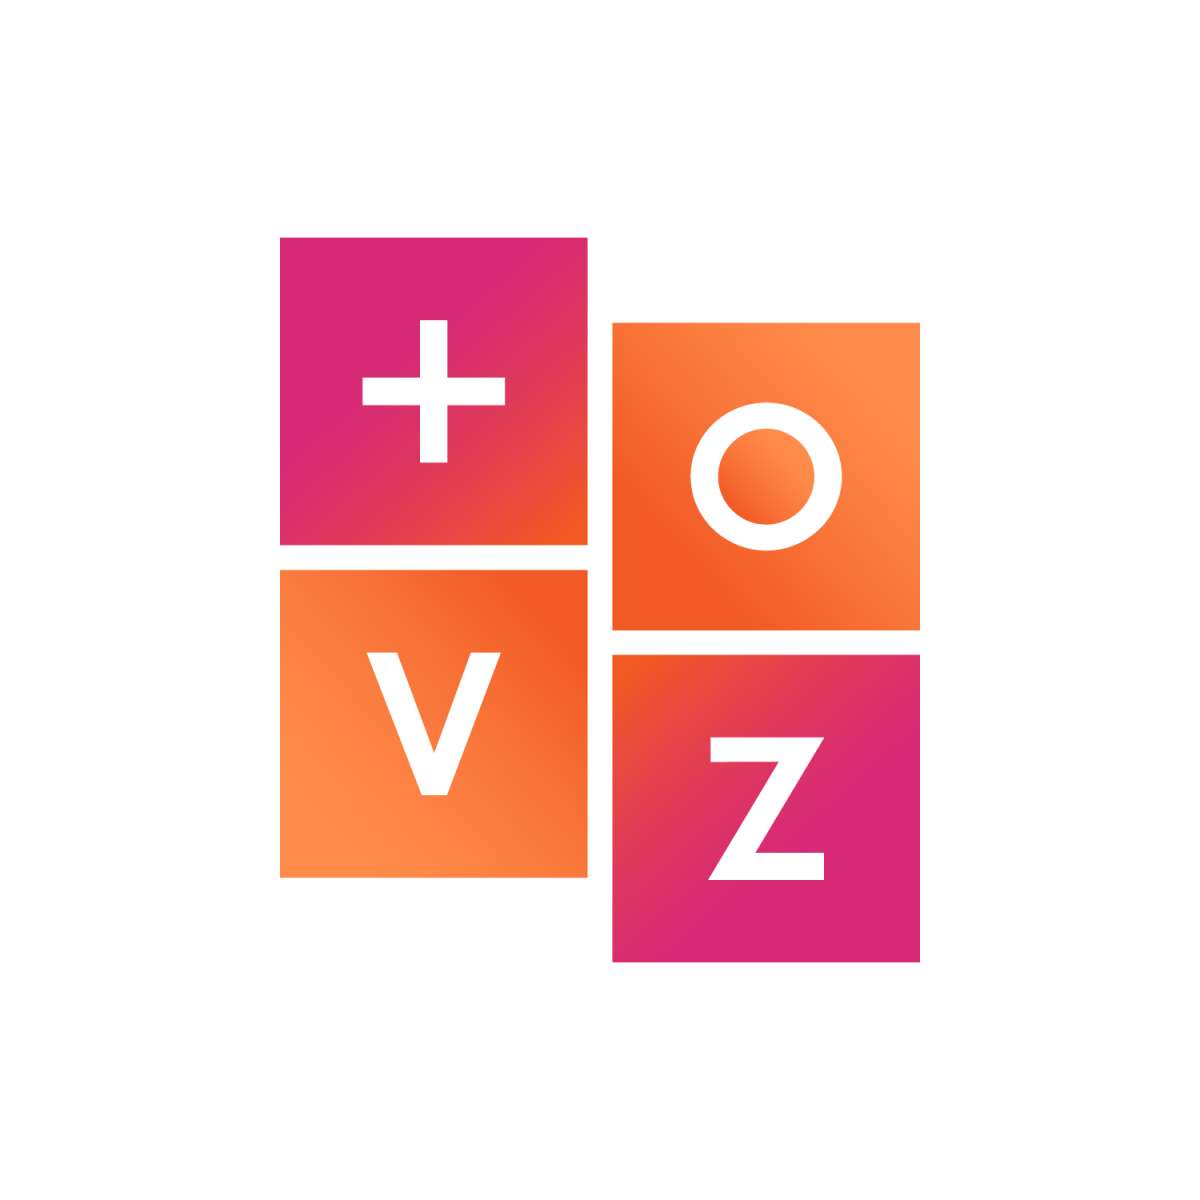 + VOZ - Profissionais da Voz e da Saúde - Lisboa - Aulas de Canto Online